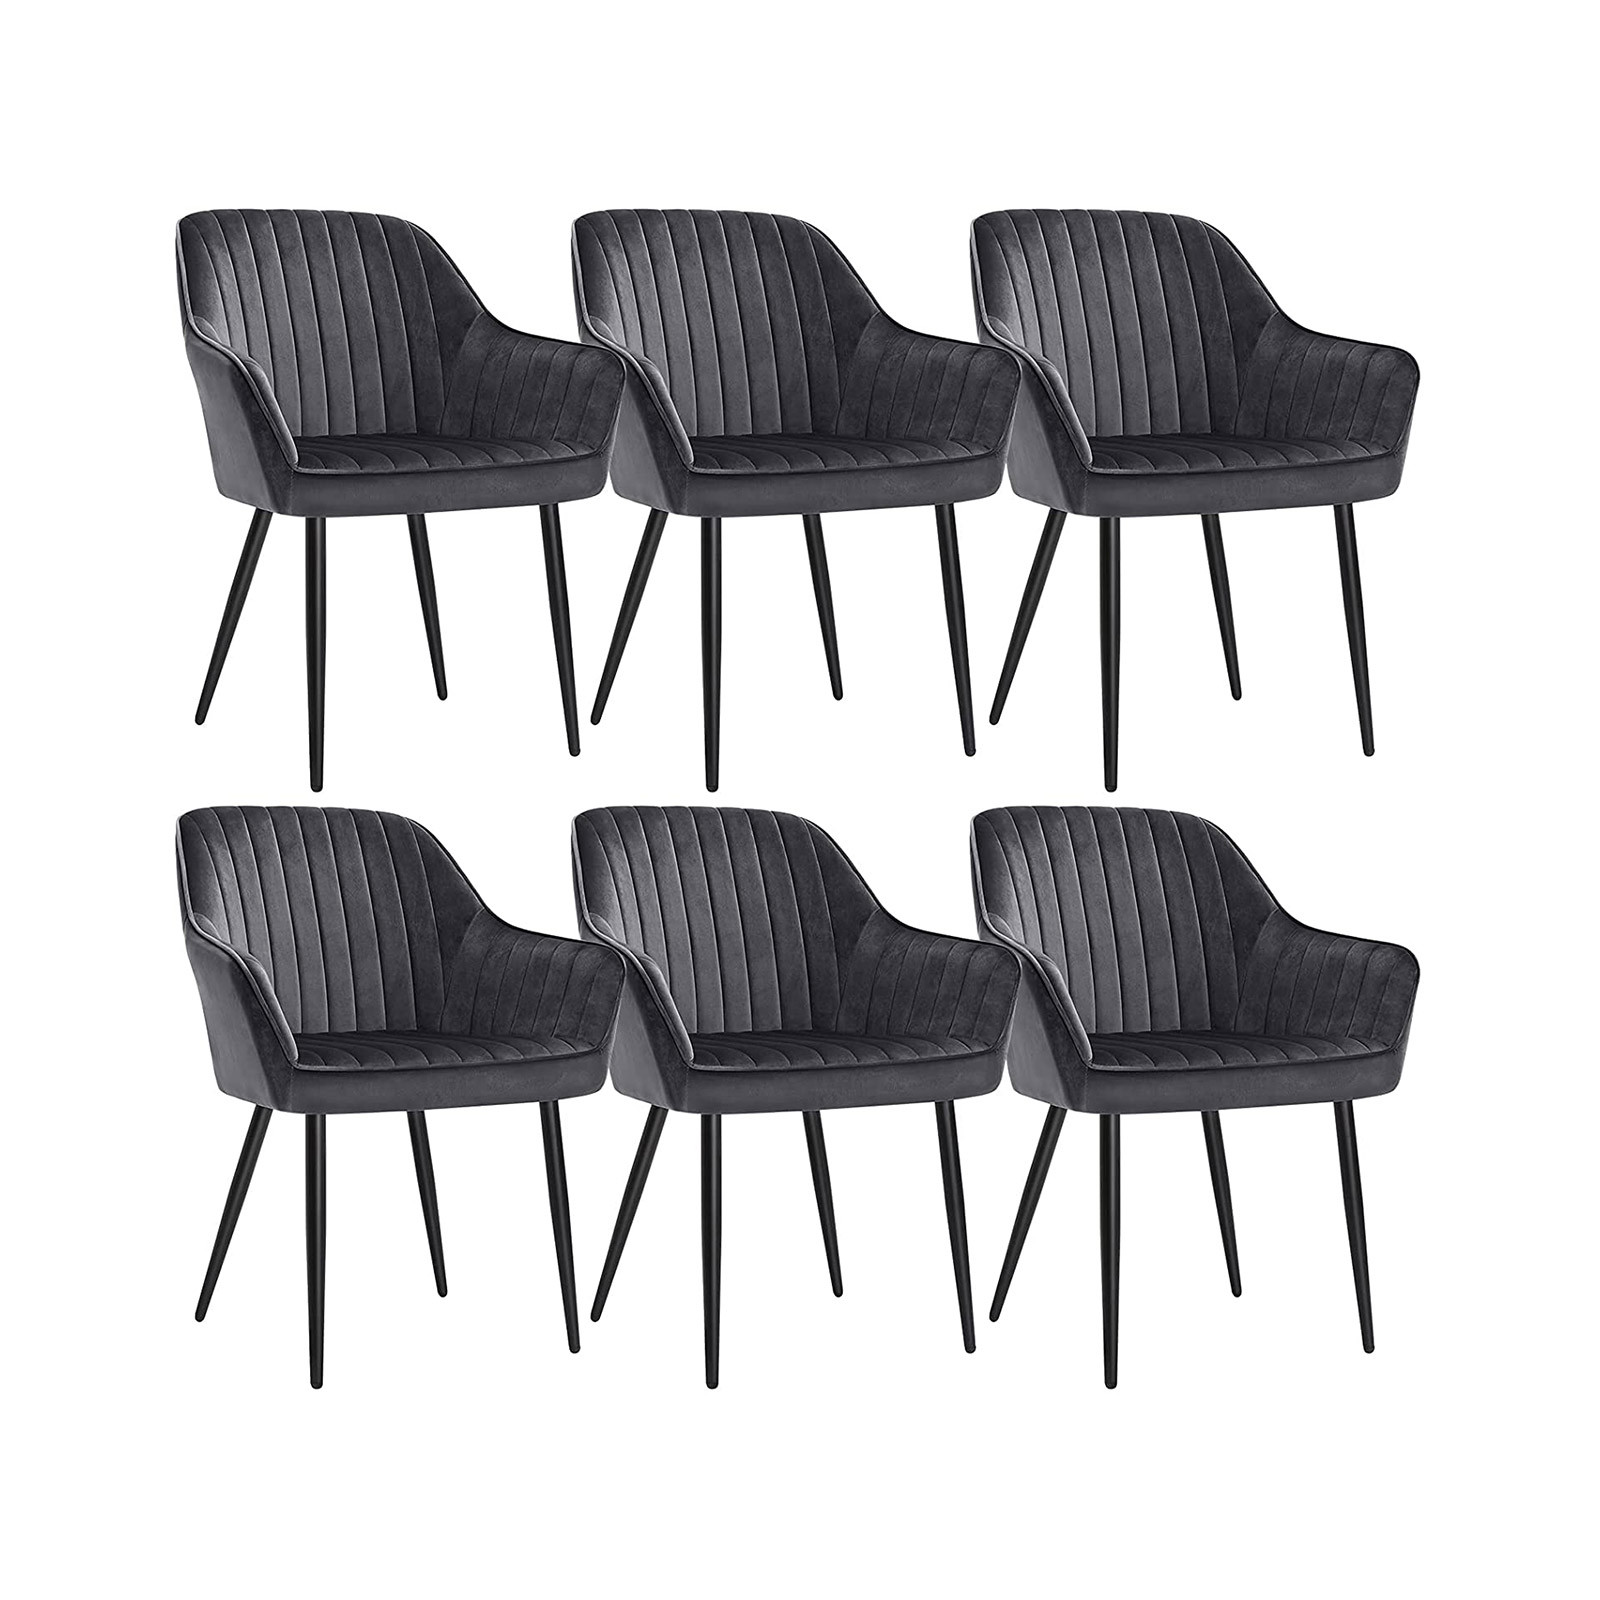 Set šiestich jedálenských stoličiek LDC087G01-6 (6 ks)